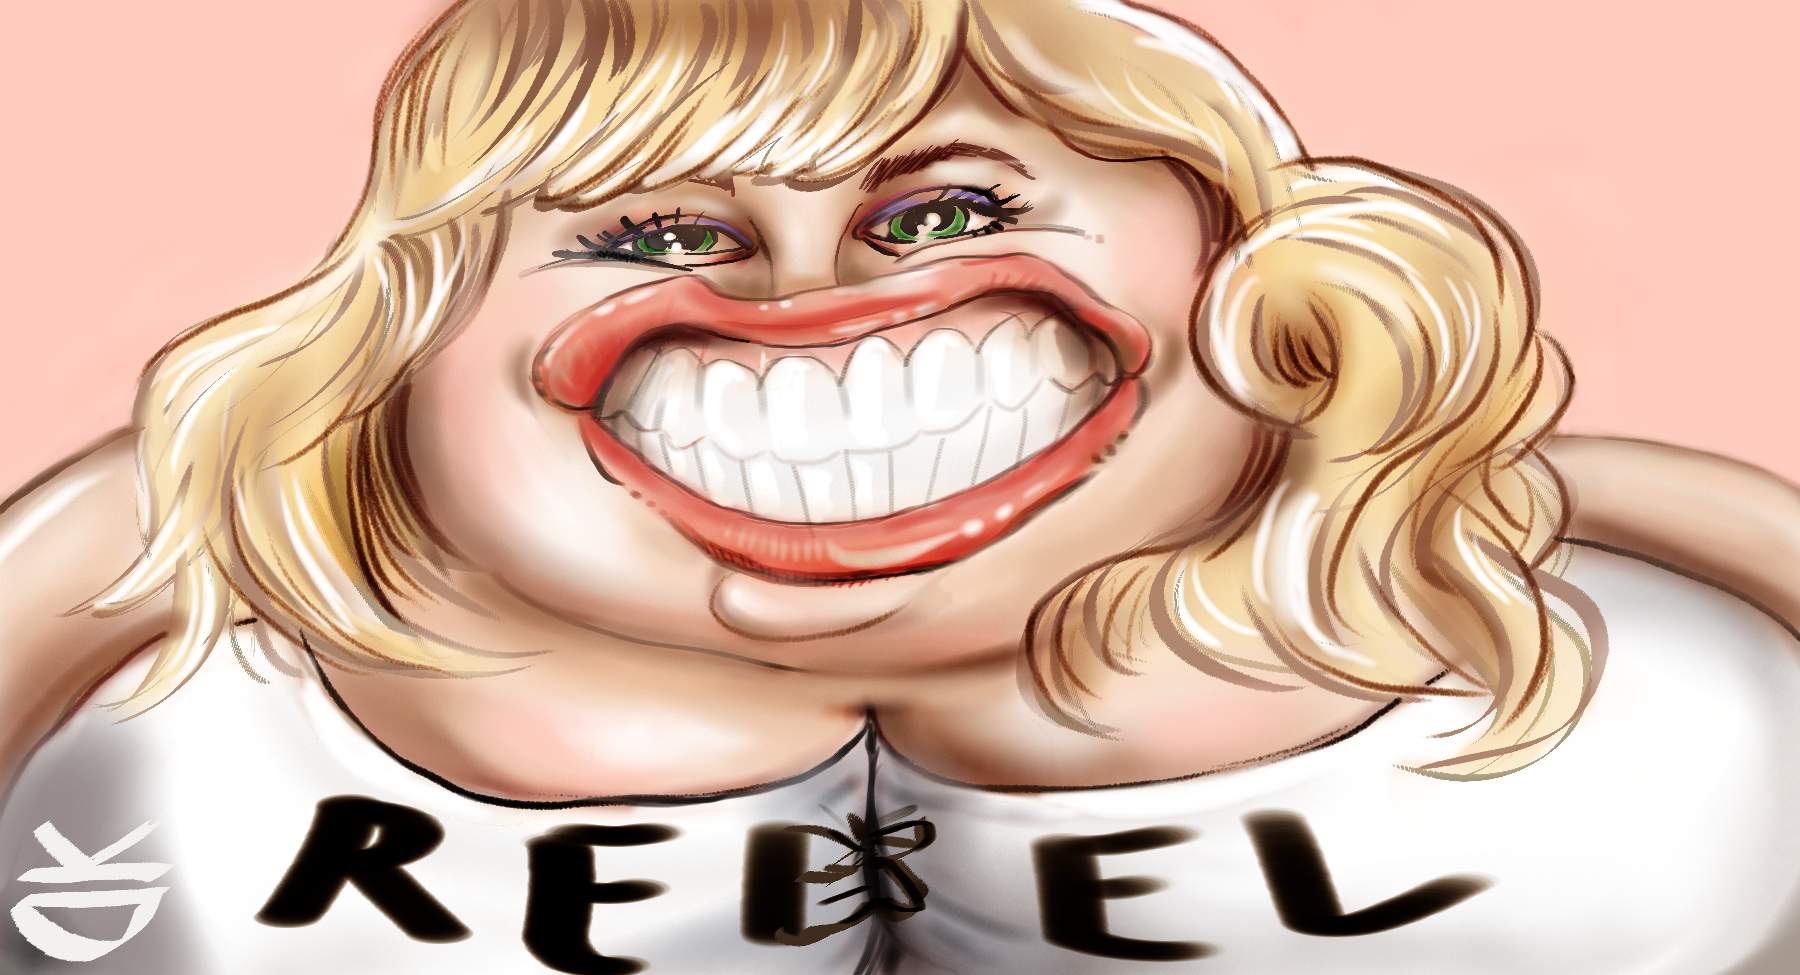 Rebel Wilson Digital Caricature.jpg